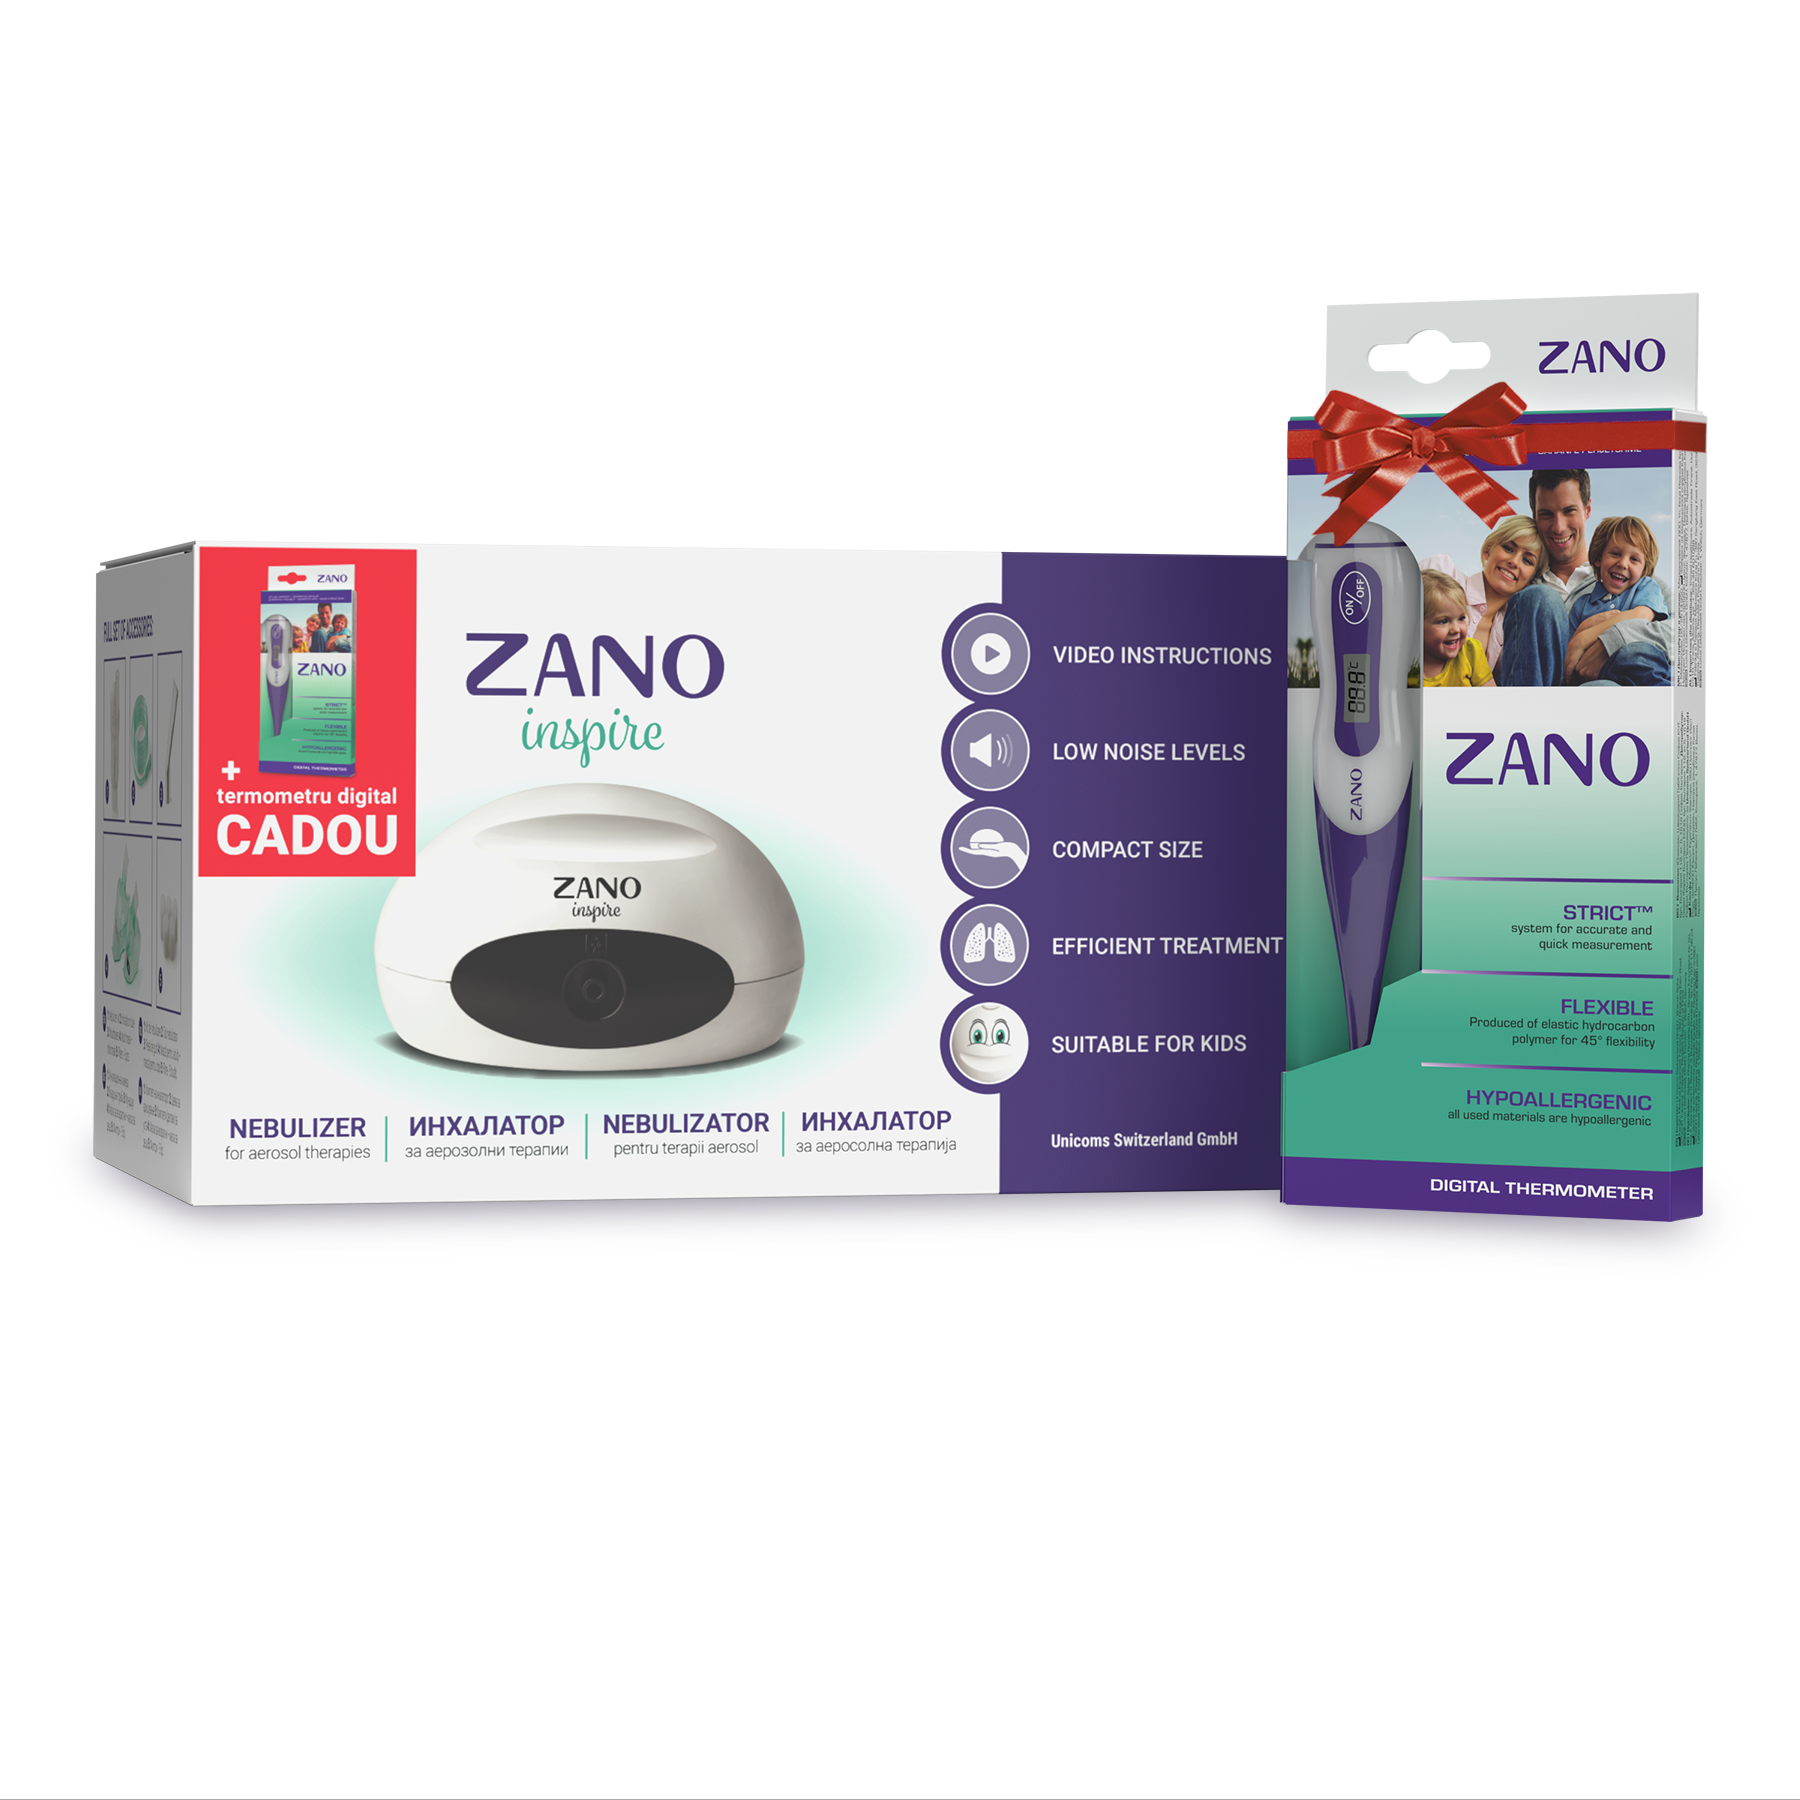 Inhalator / Nebulizator Compresor ZANO, pentru Copii si Adulti + Termometru